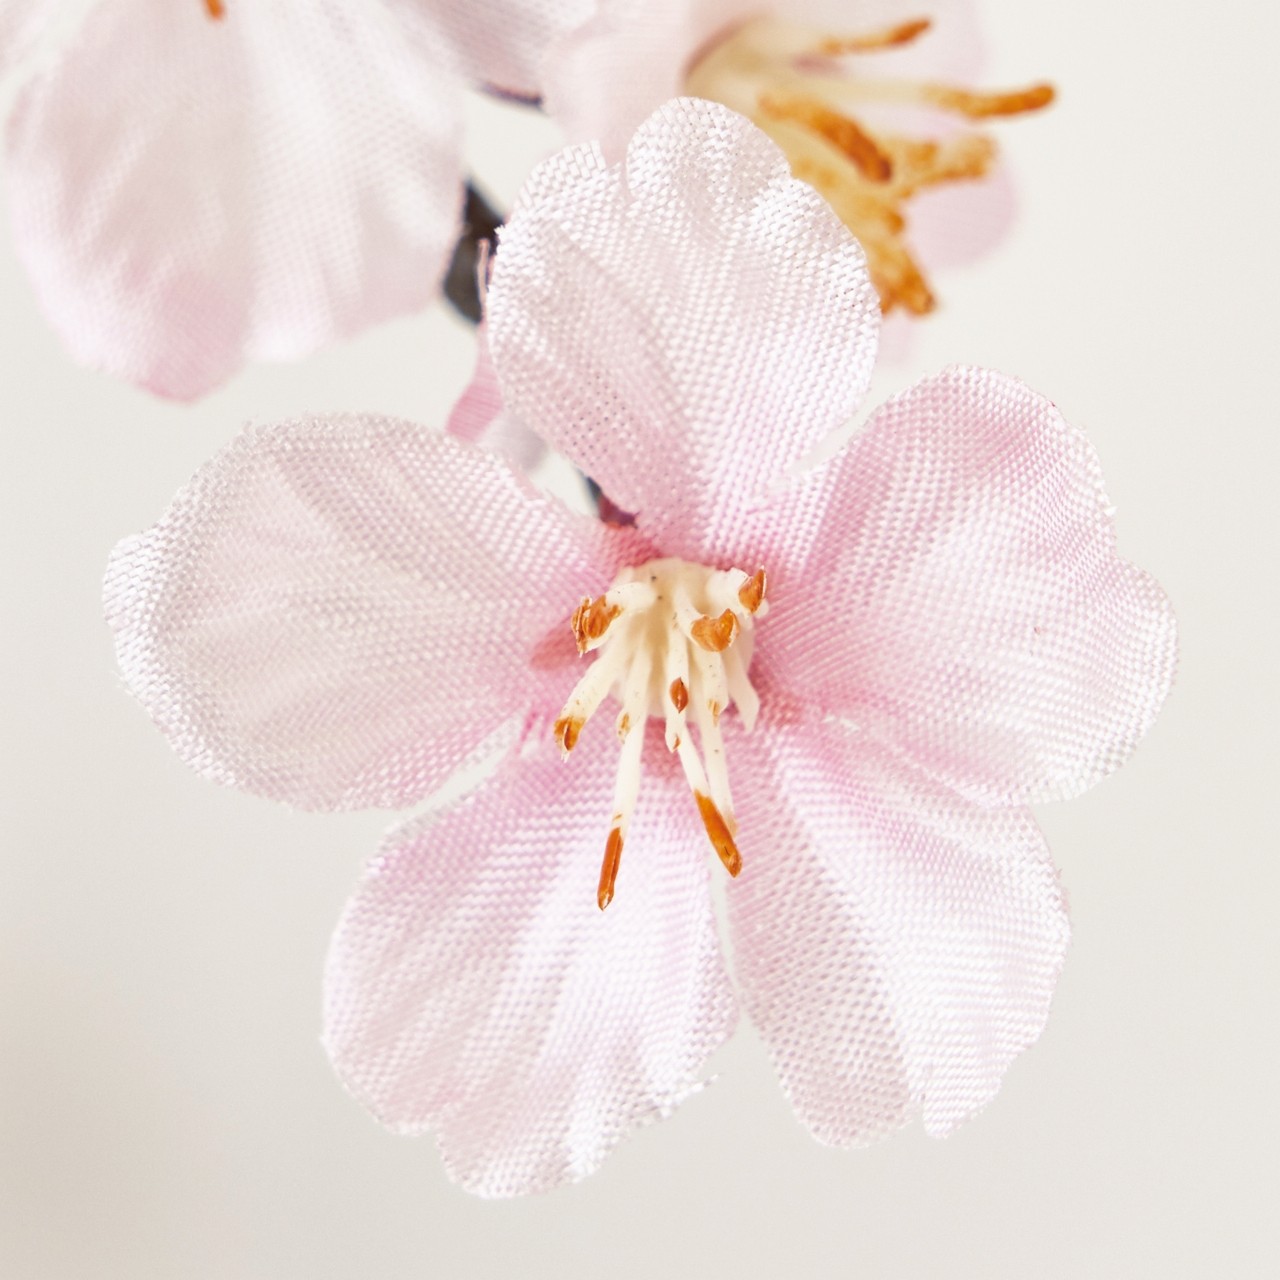 マイフラ 通販 Magiq 薄紅の桜 ガーランド ピンク アーティフィシャルフラワー 造花 Fm007074 さくら 花径 約2 4 長さ 約115cm ピンク Magiq アーティフィシャルフラワー 造花 全国にmagiq 花器 花資材などをお届けします